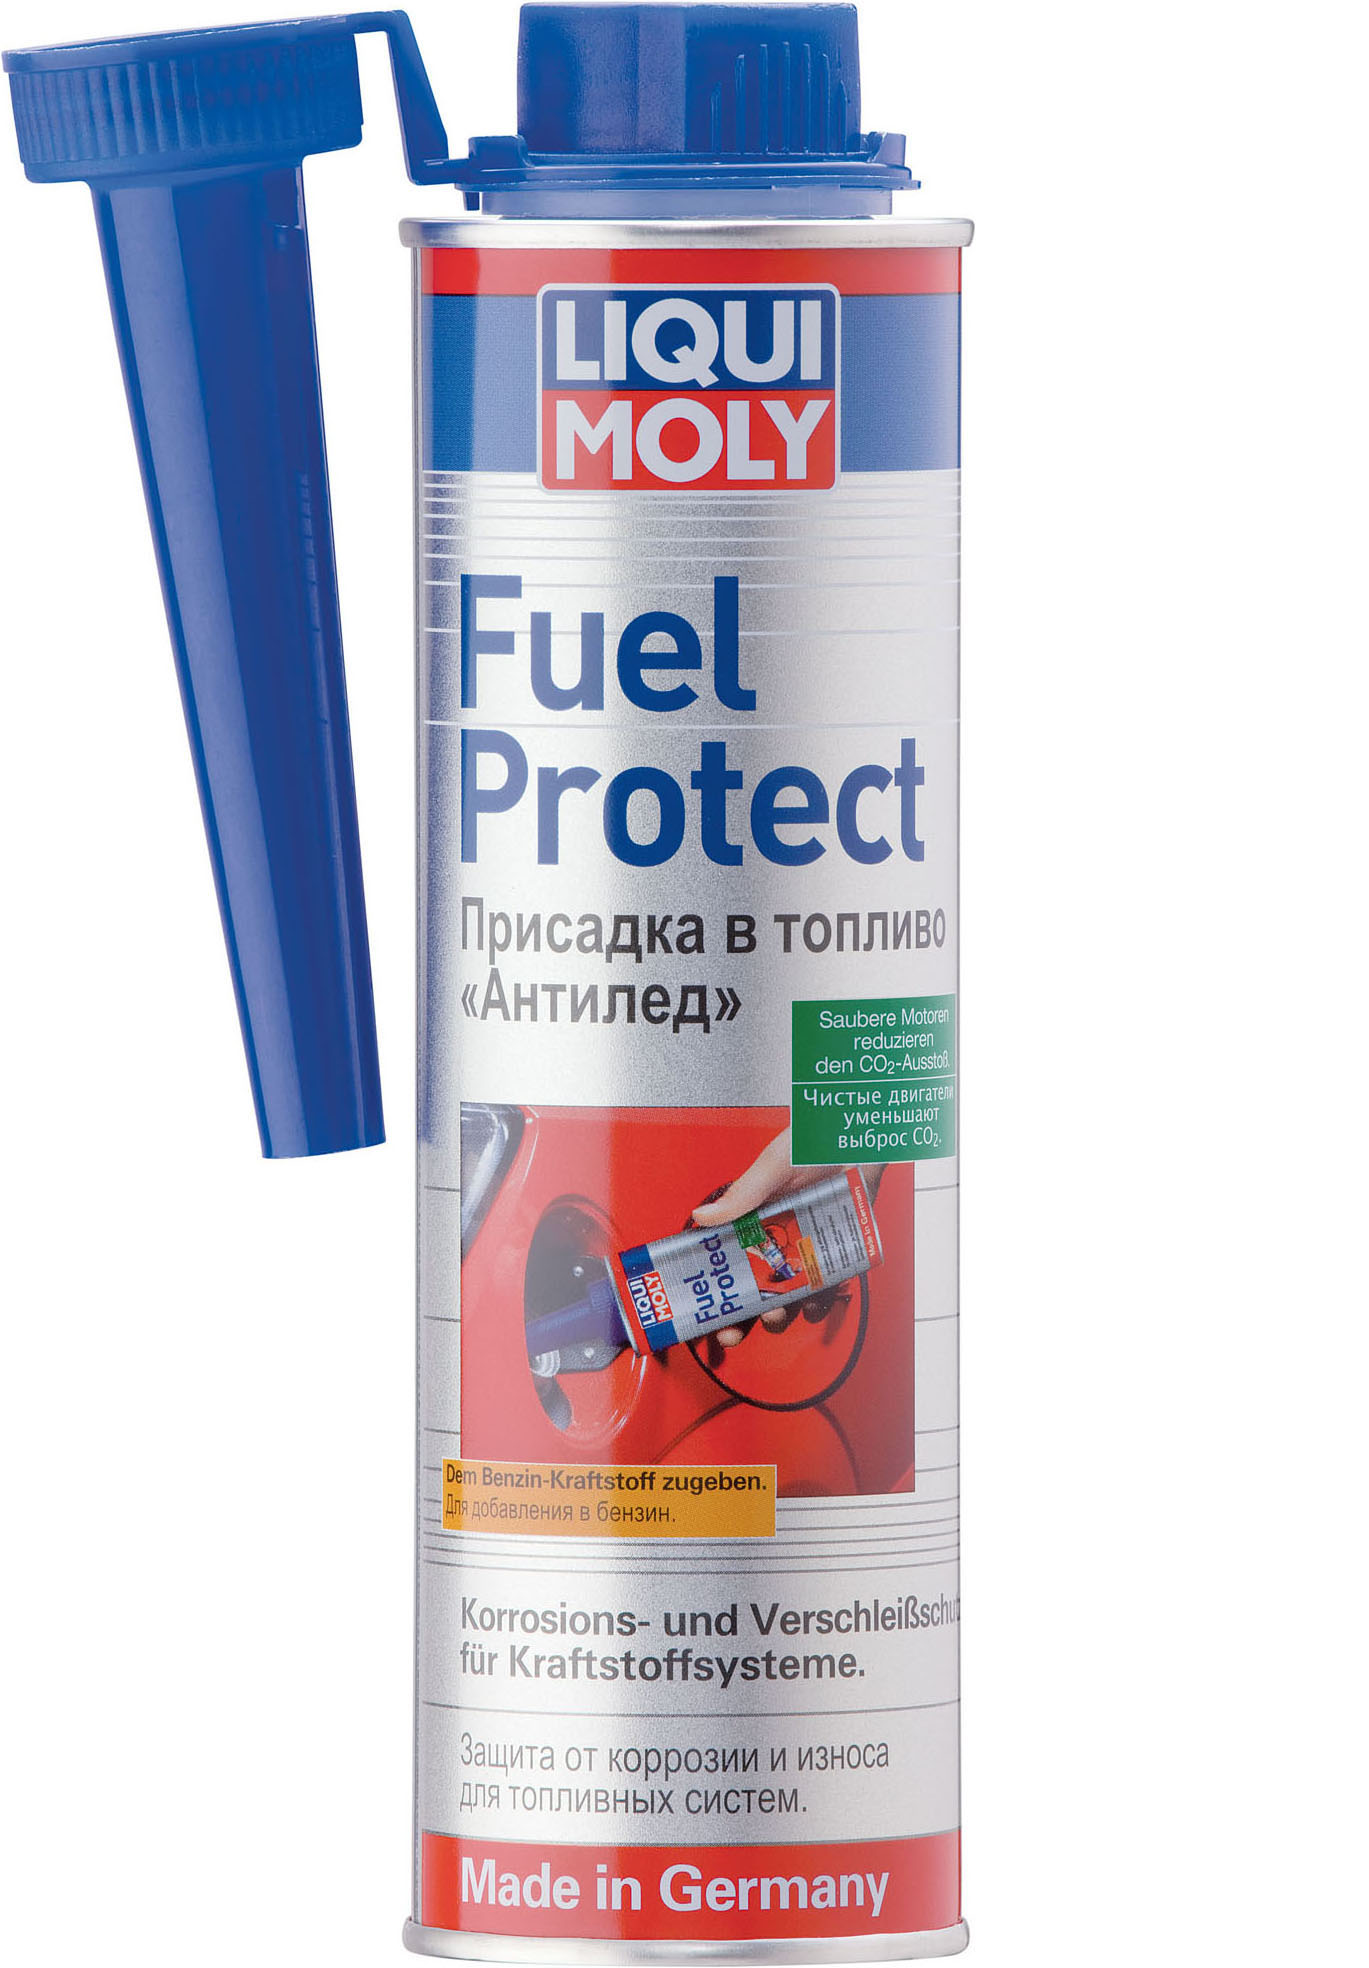 Осушитель - очиститель топлива Fuel Protect, 300мл - Liqui Moly 3964